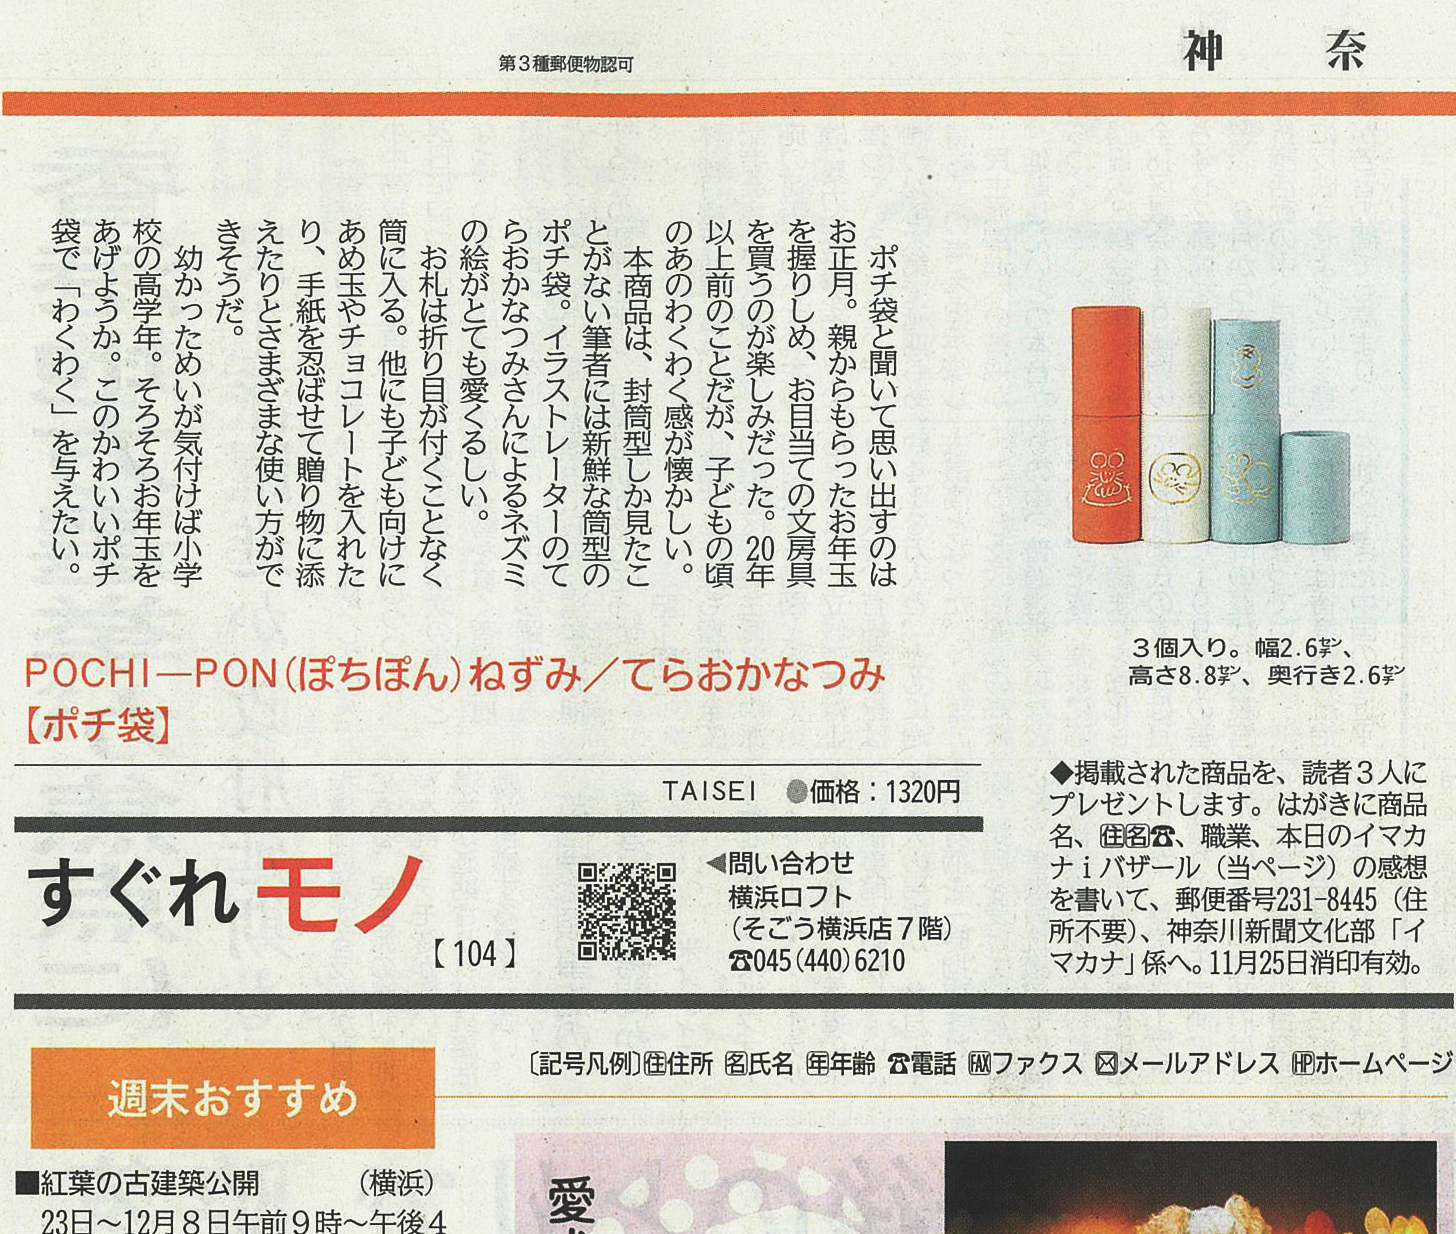 Pochi Ponが 神奈川新聞 で紹介されました 大成紙器製作所 Sikigu